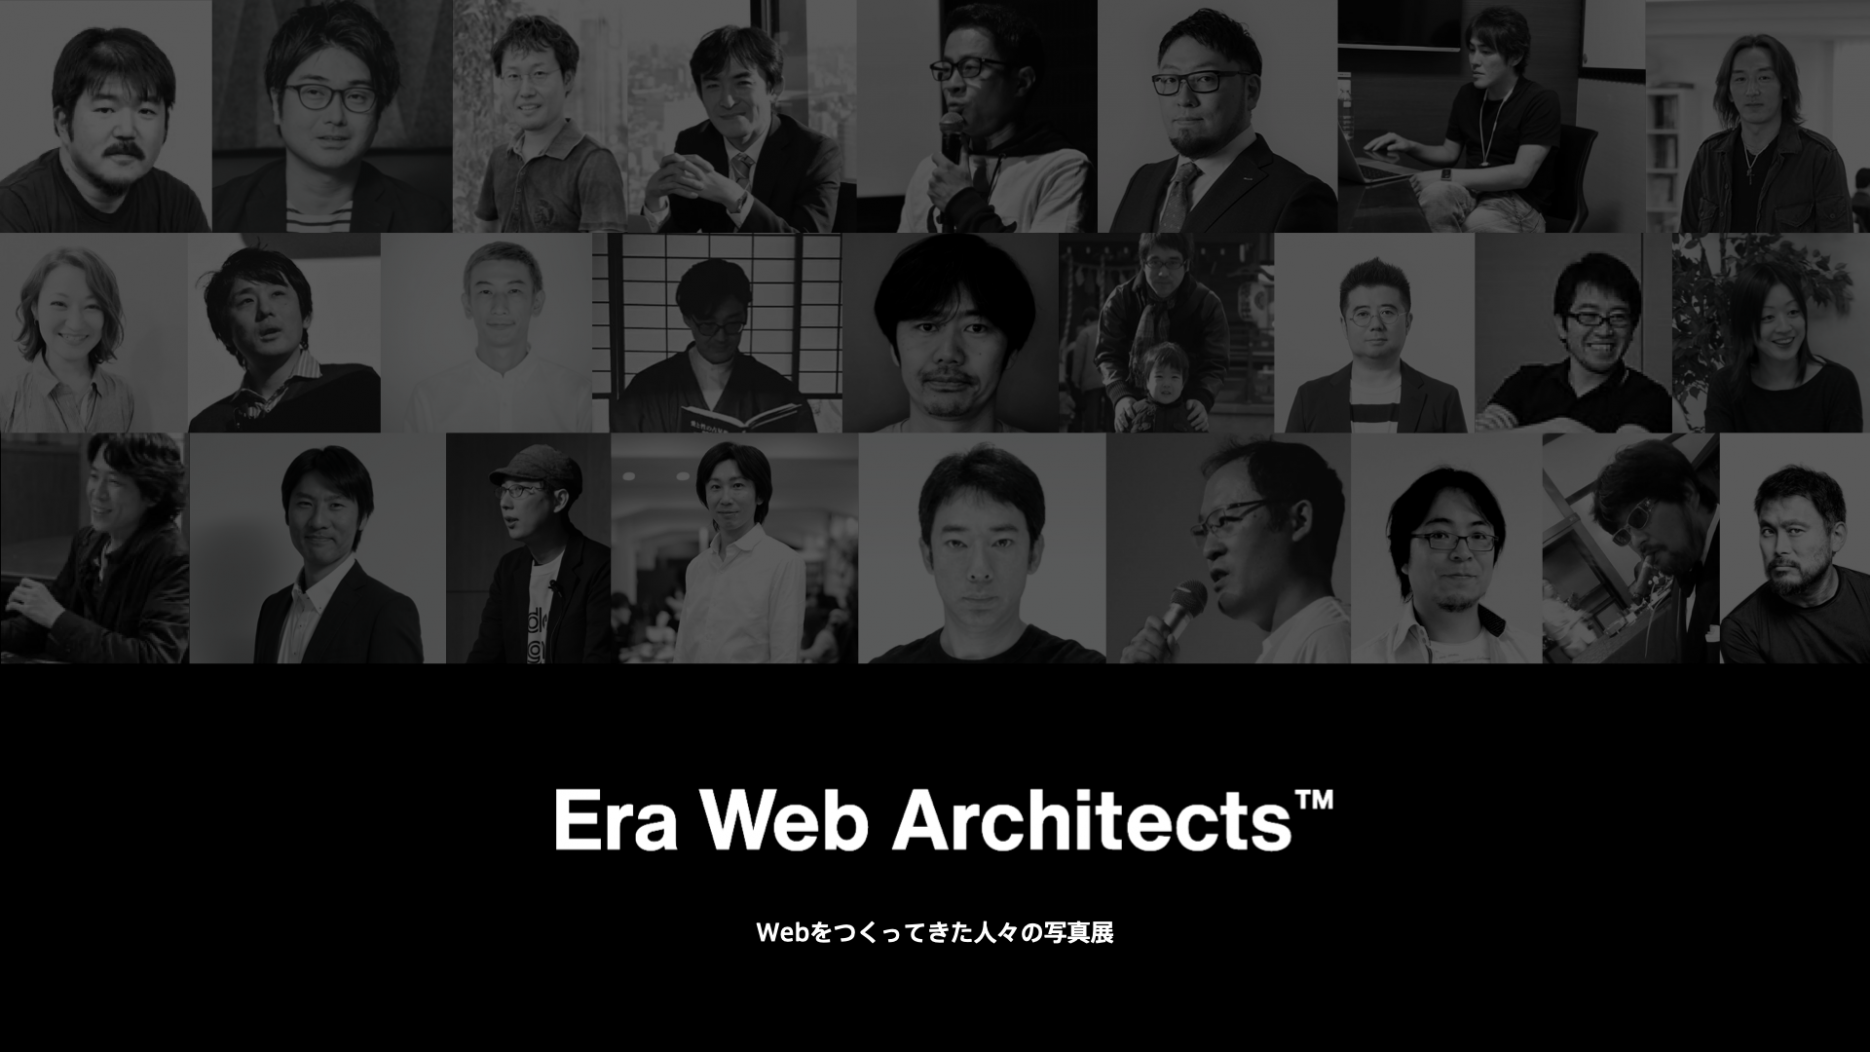 Era Web Architects ― Webをつくってきた人々の写真展